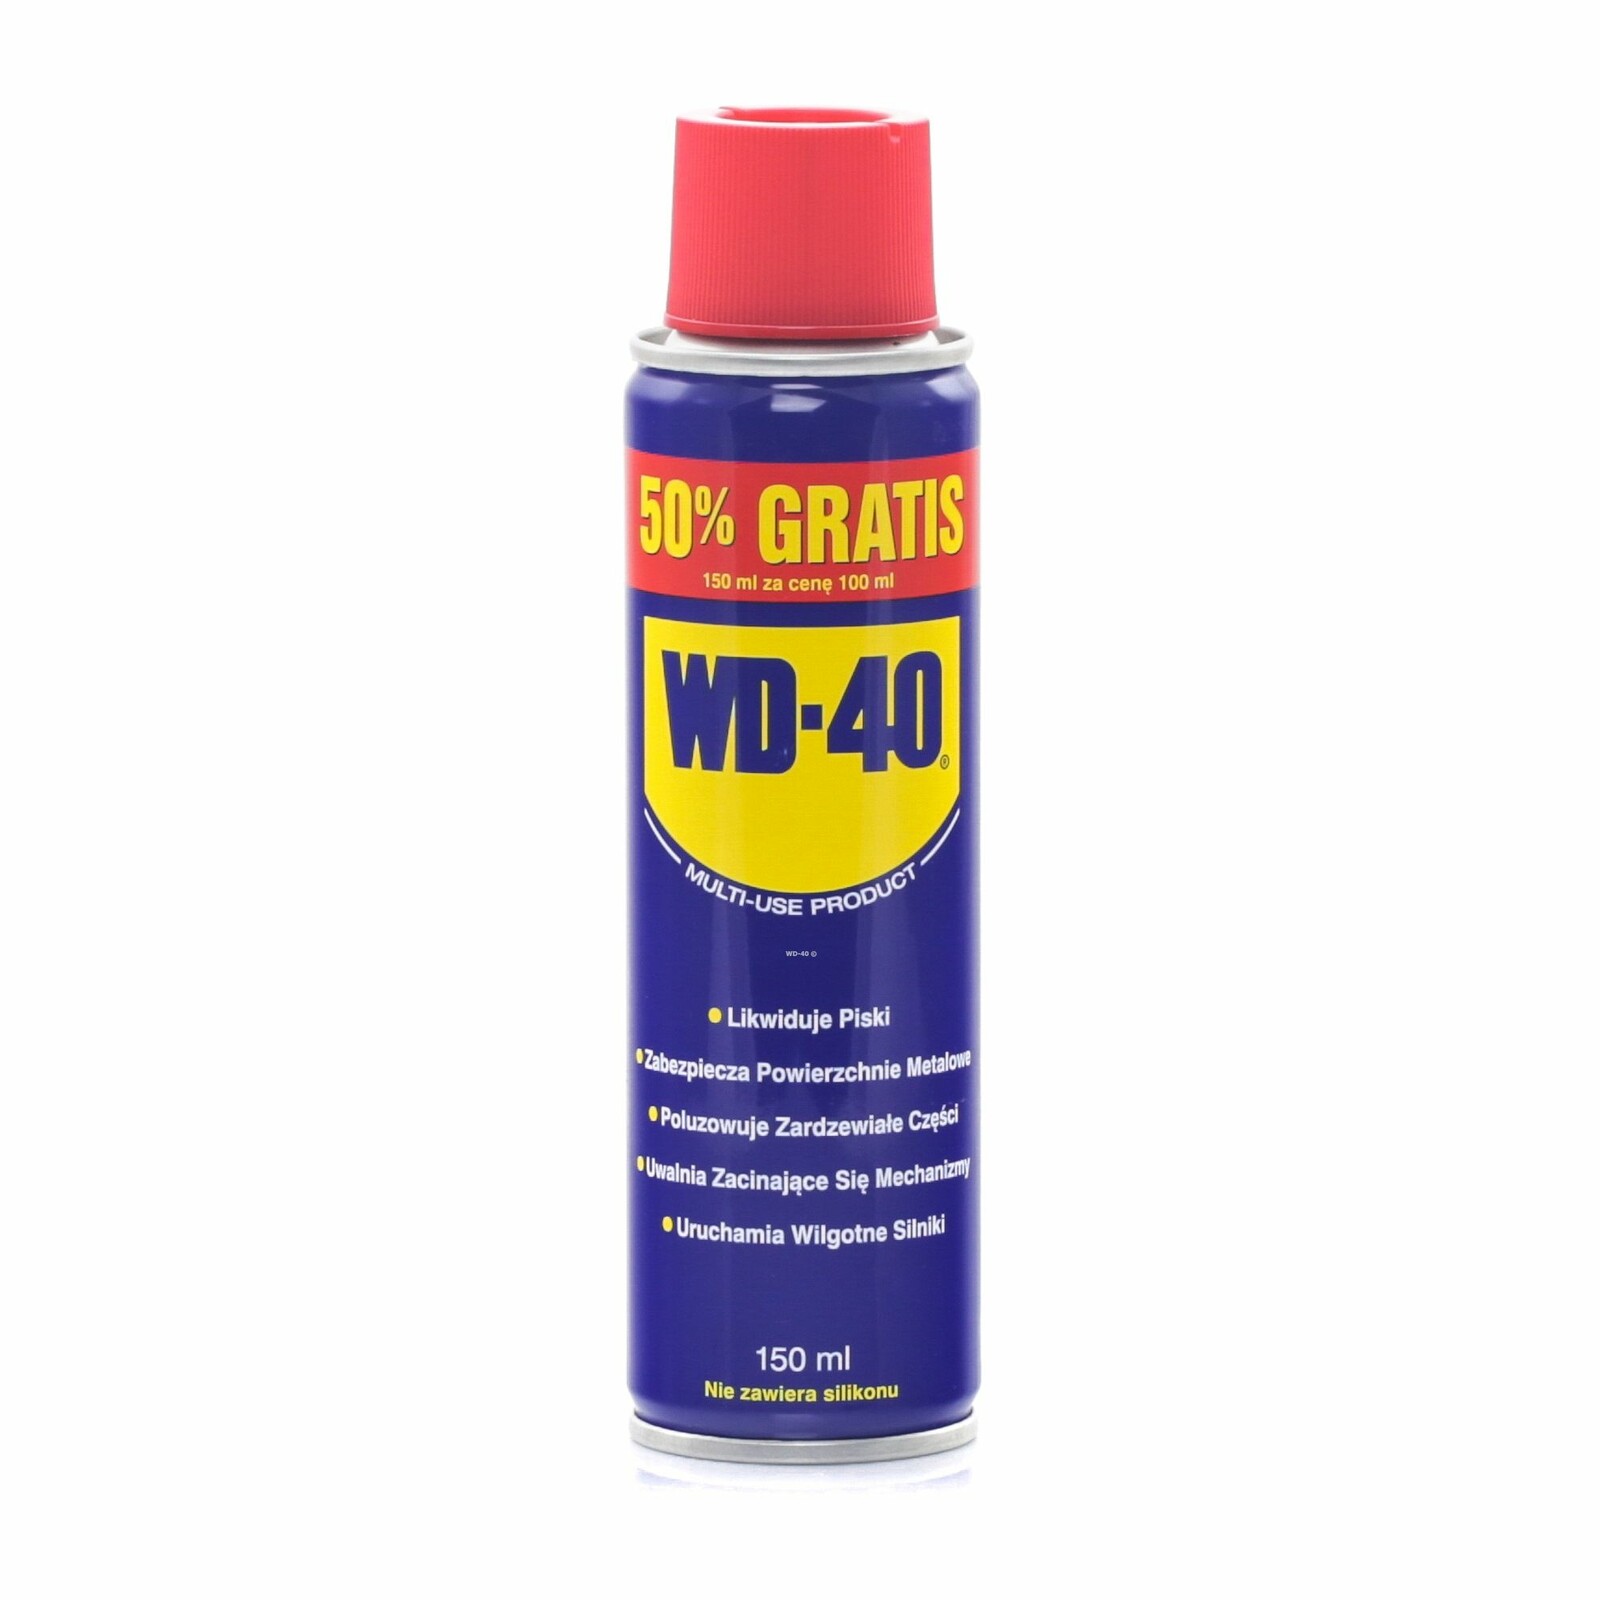 WD-40 - 150 ml univerzální mazivo